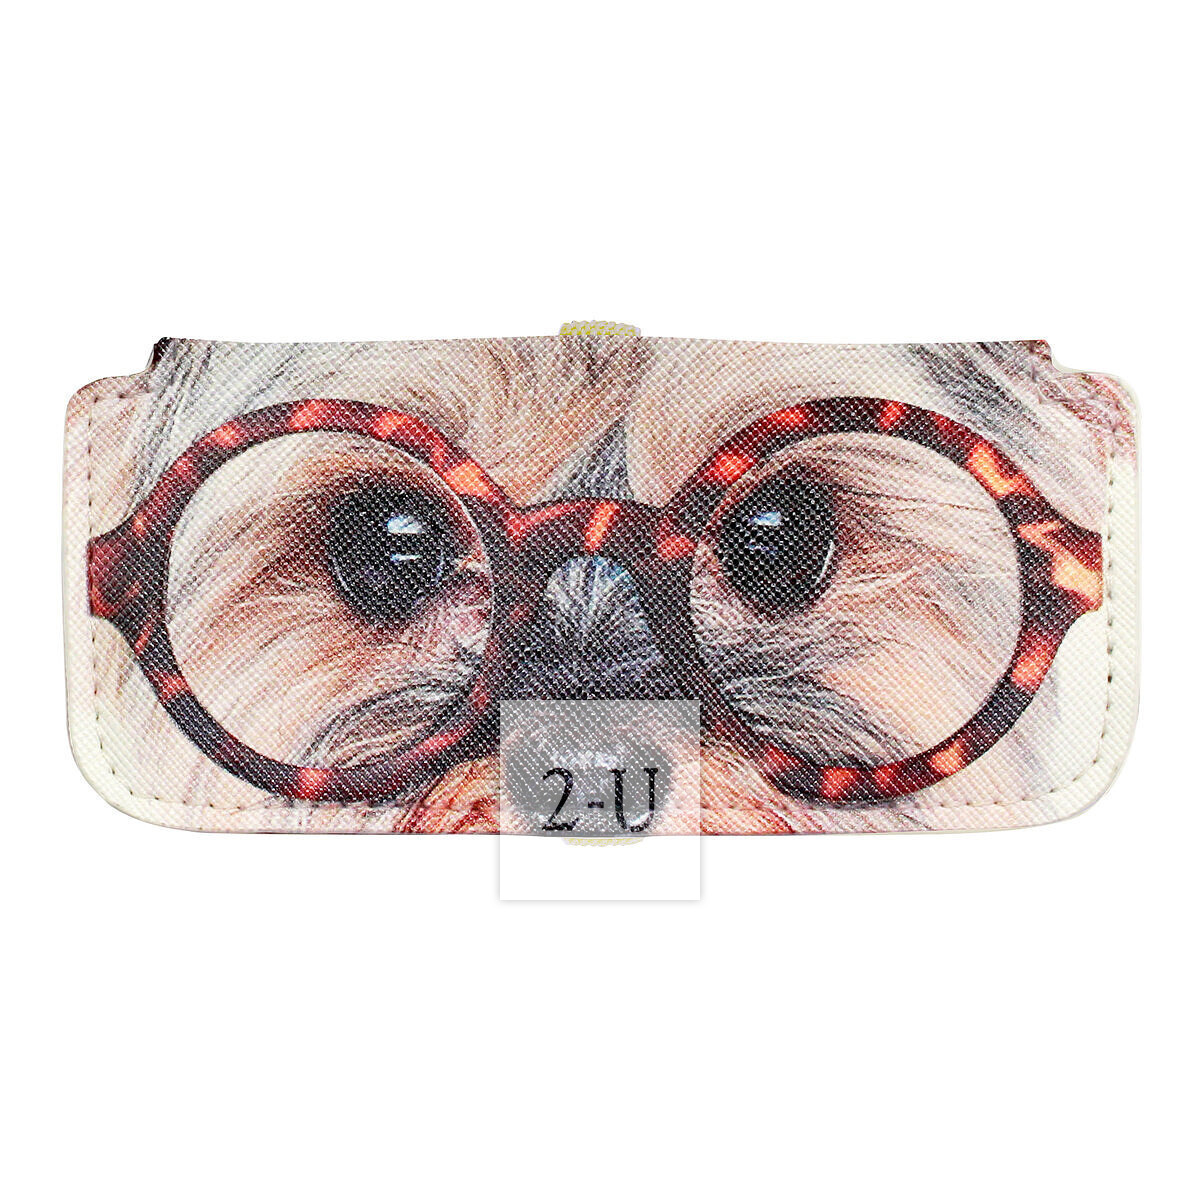 小巧眼镜盒 动物图案之约克夏梗犬